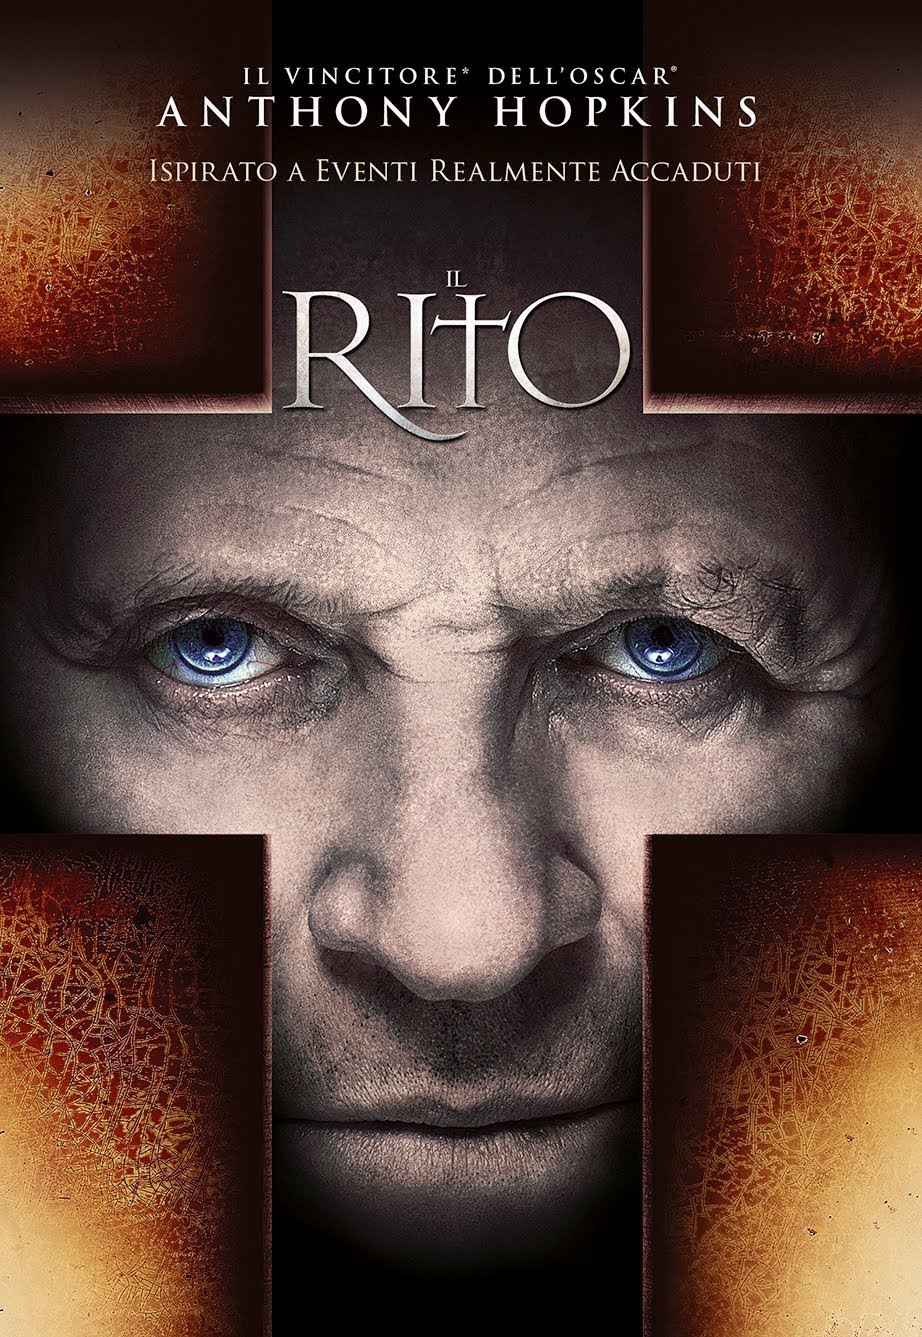 Il Rito [HD] (2011)